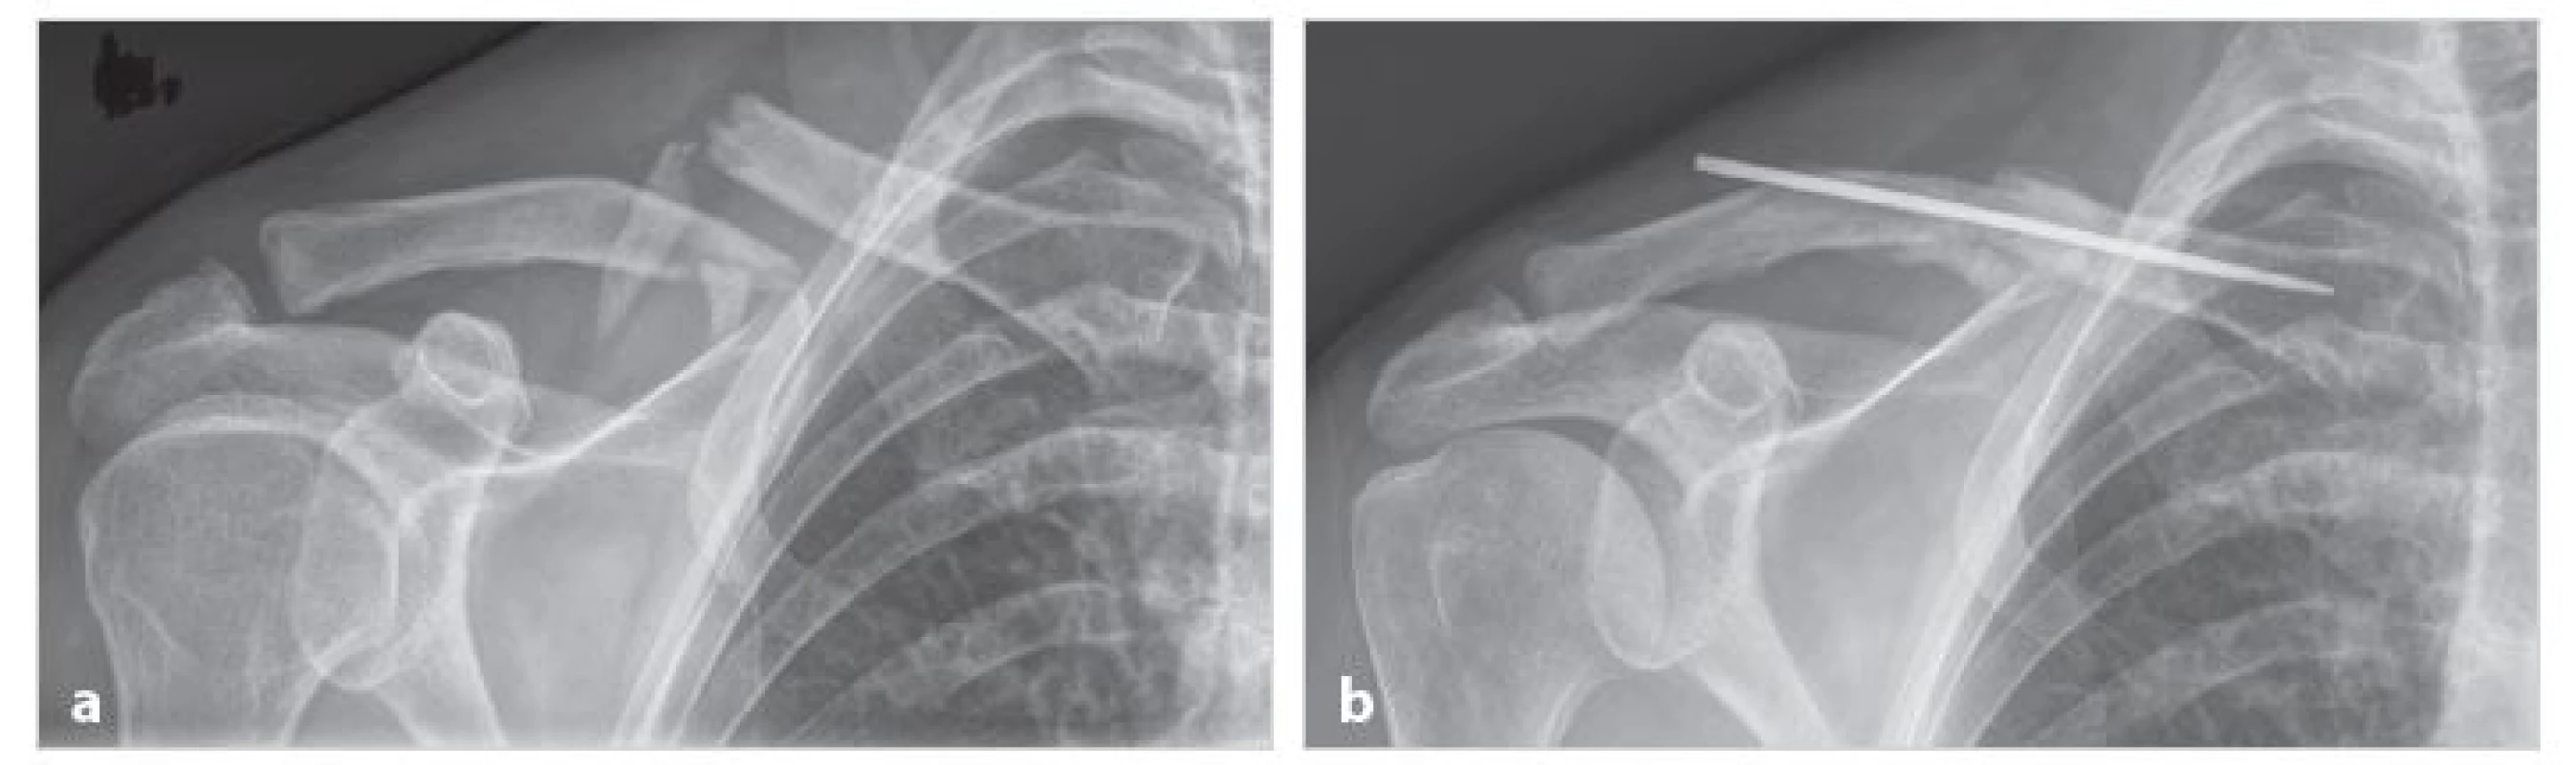 Nekomplikované hojení vícefragmentové zlomeniny střední části klíční kosti (muž V. H., 54 let)
a) úrazový snímek čtyřfragmentové zlomeniny; b) tři měsíce po operaci je zlomenina zhojena v dobrém postavení kostních fragmentů
Fig. 1: Uncomplicated healing of multifragment fracture of the clavice midshaft (male V.H., 54 years)
a) X-ray of a four-fragment fracture taken after the injury; b) three months after surgery with healed fracture and good position of bone fragments